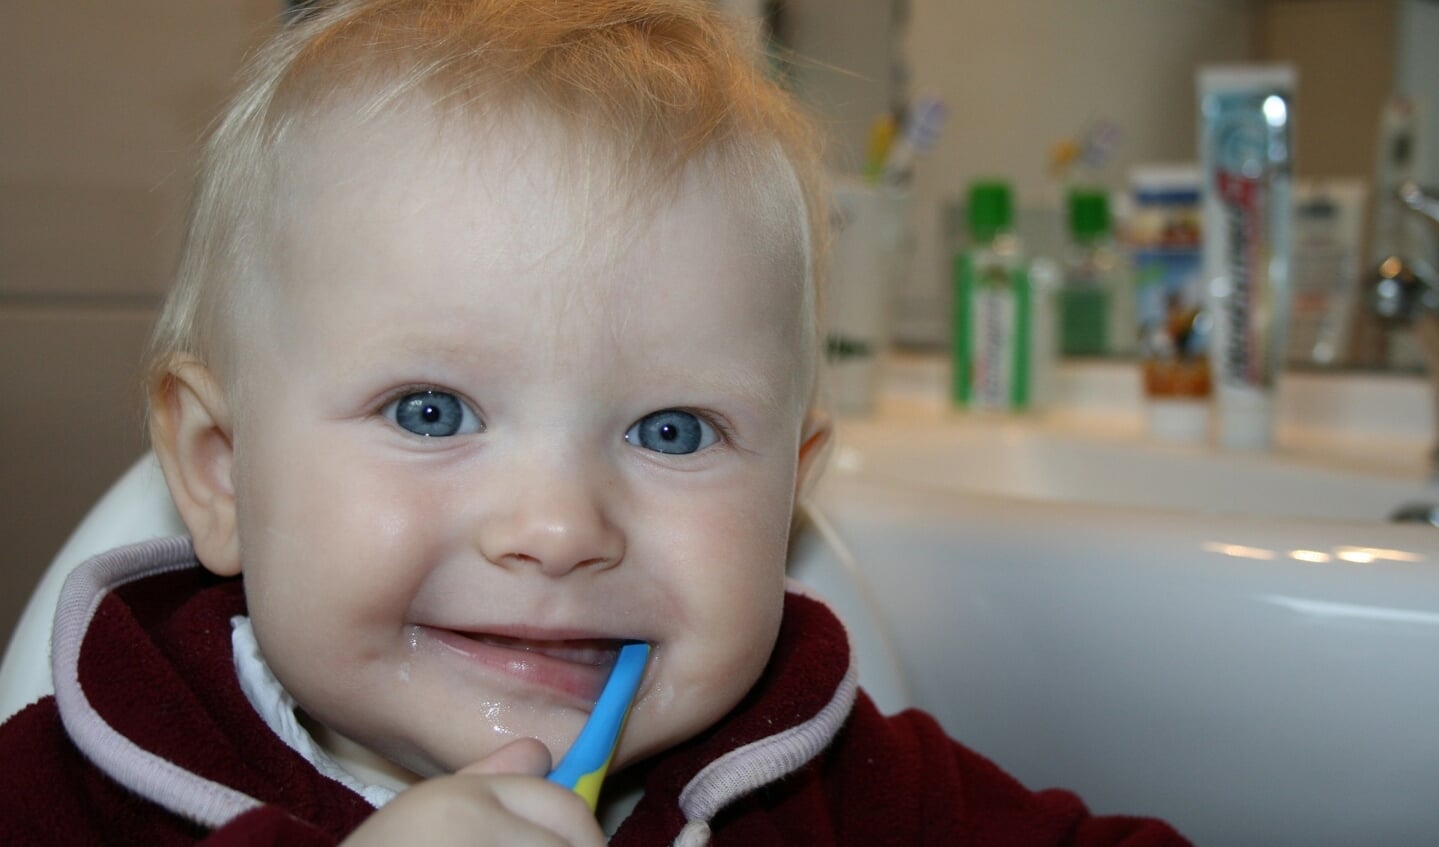 Det kan være hyggeligt at gumle på en tandbørste, men når mor og far tager fat, starter der en krig.